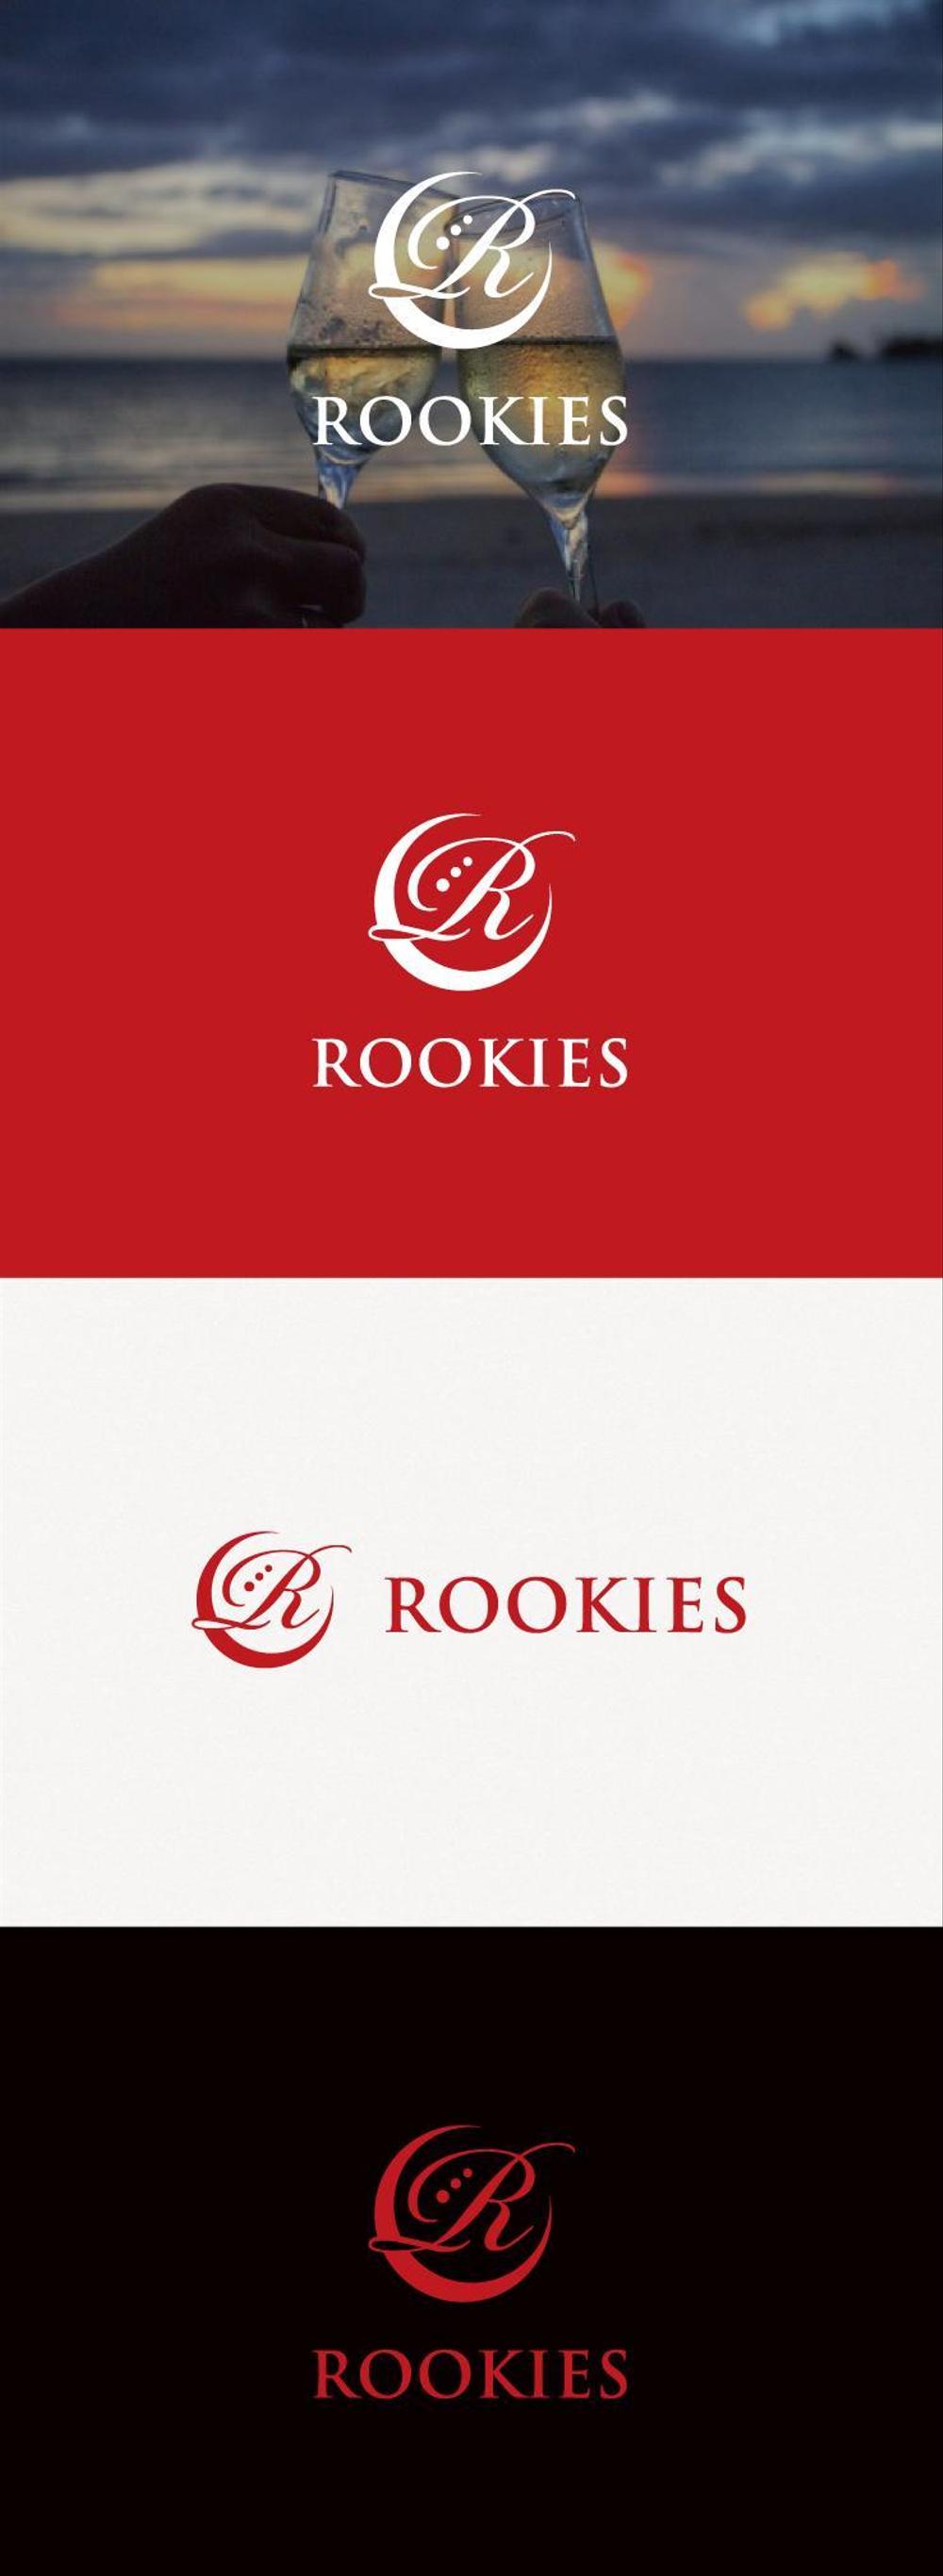 ホストクラブの新店「ROOKIES」ロゴマーク